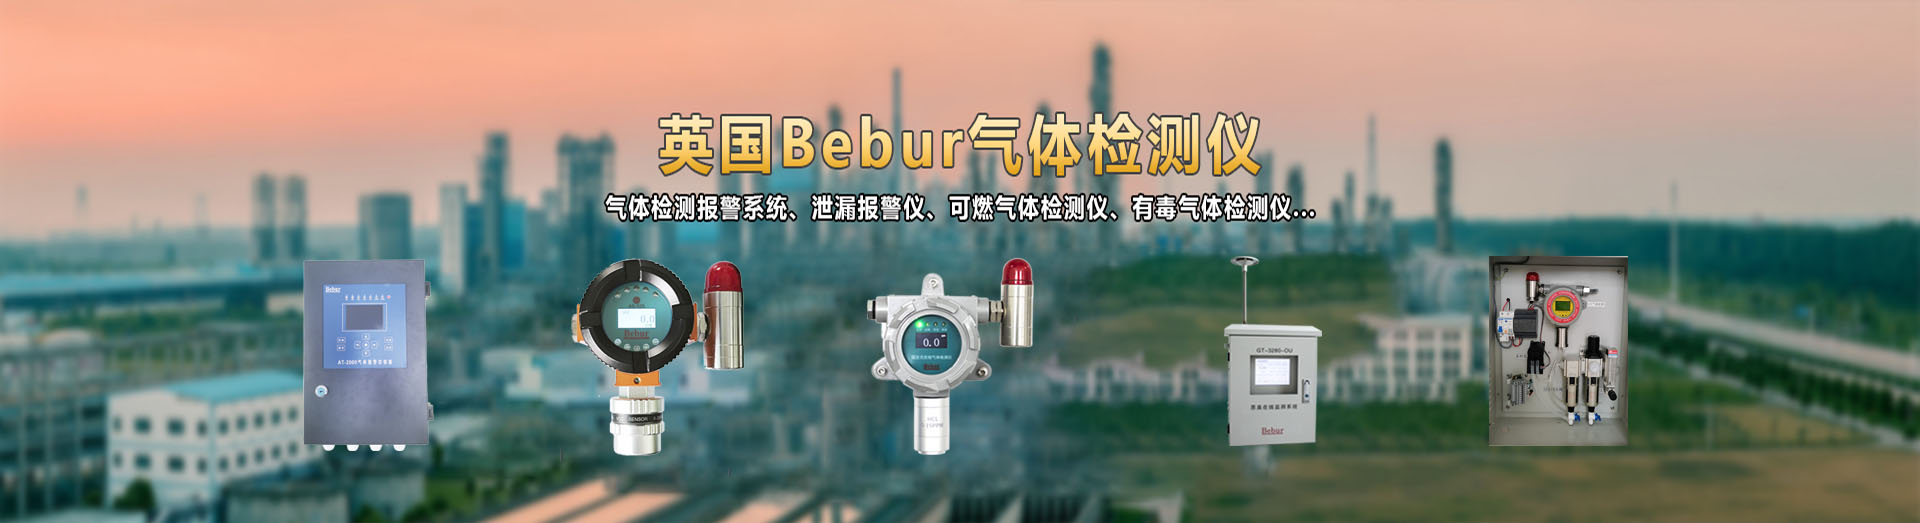 英国Bebur品牌进口固定式气体检测仪器系列产品